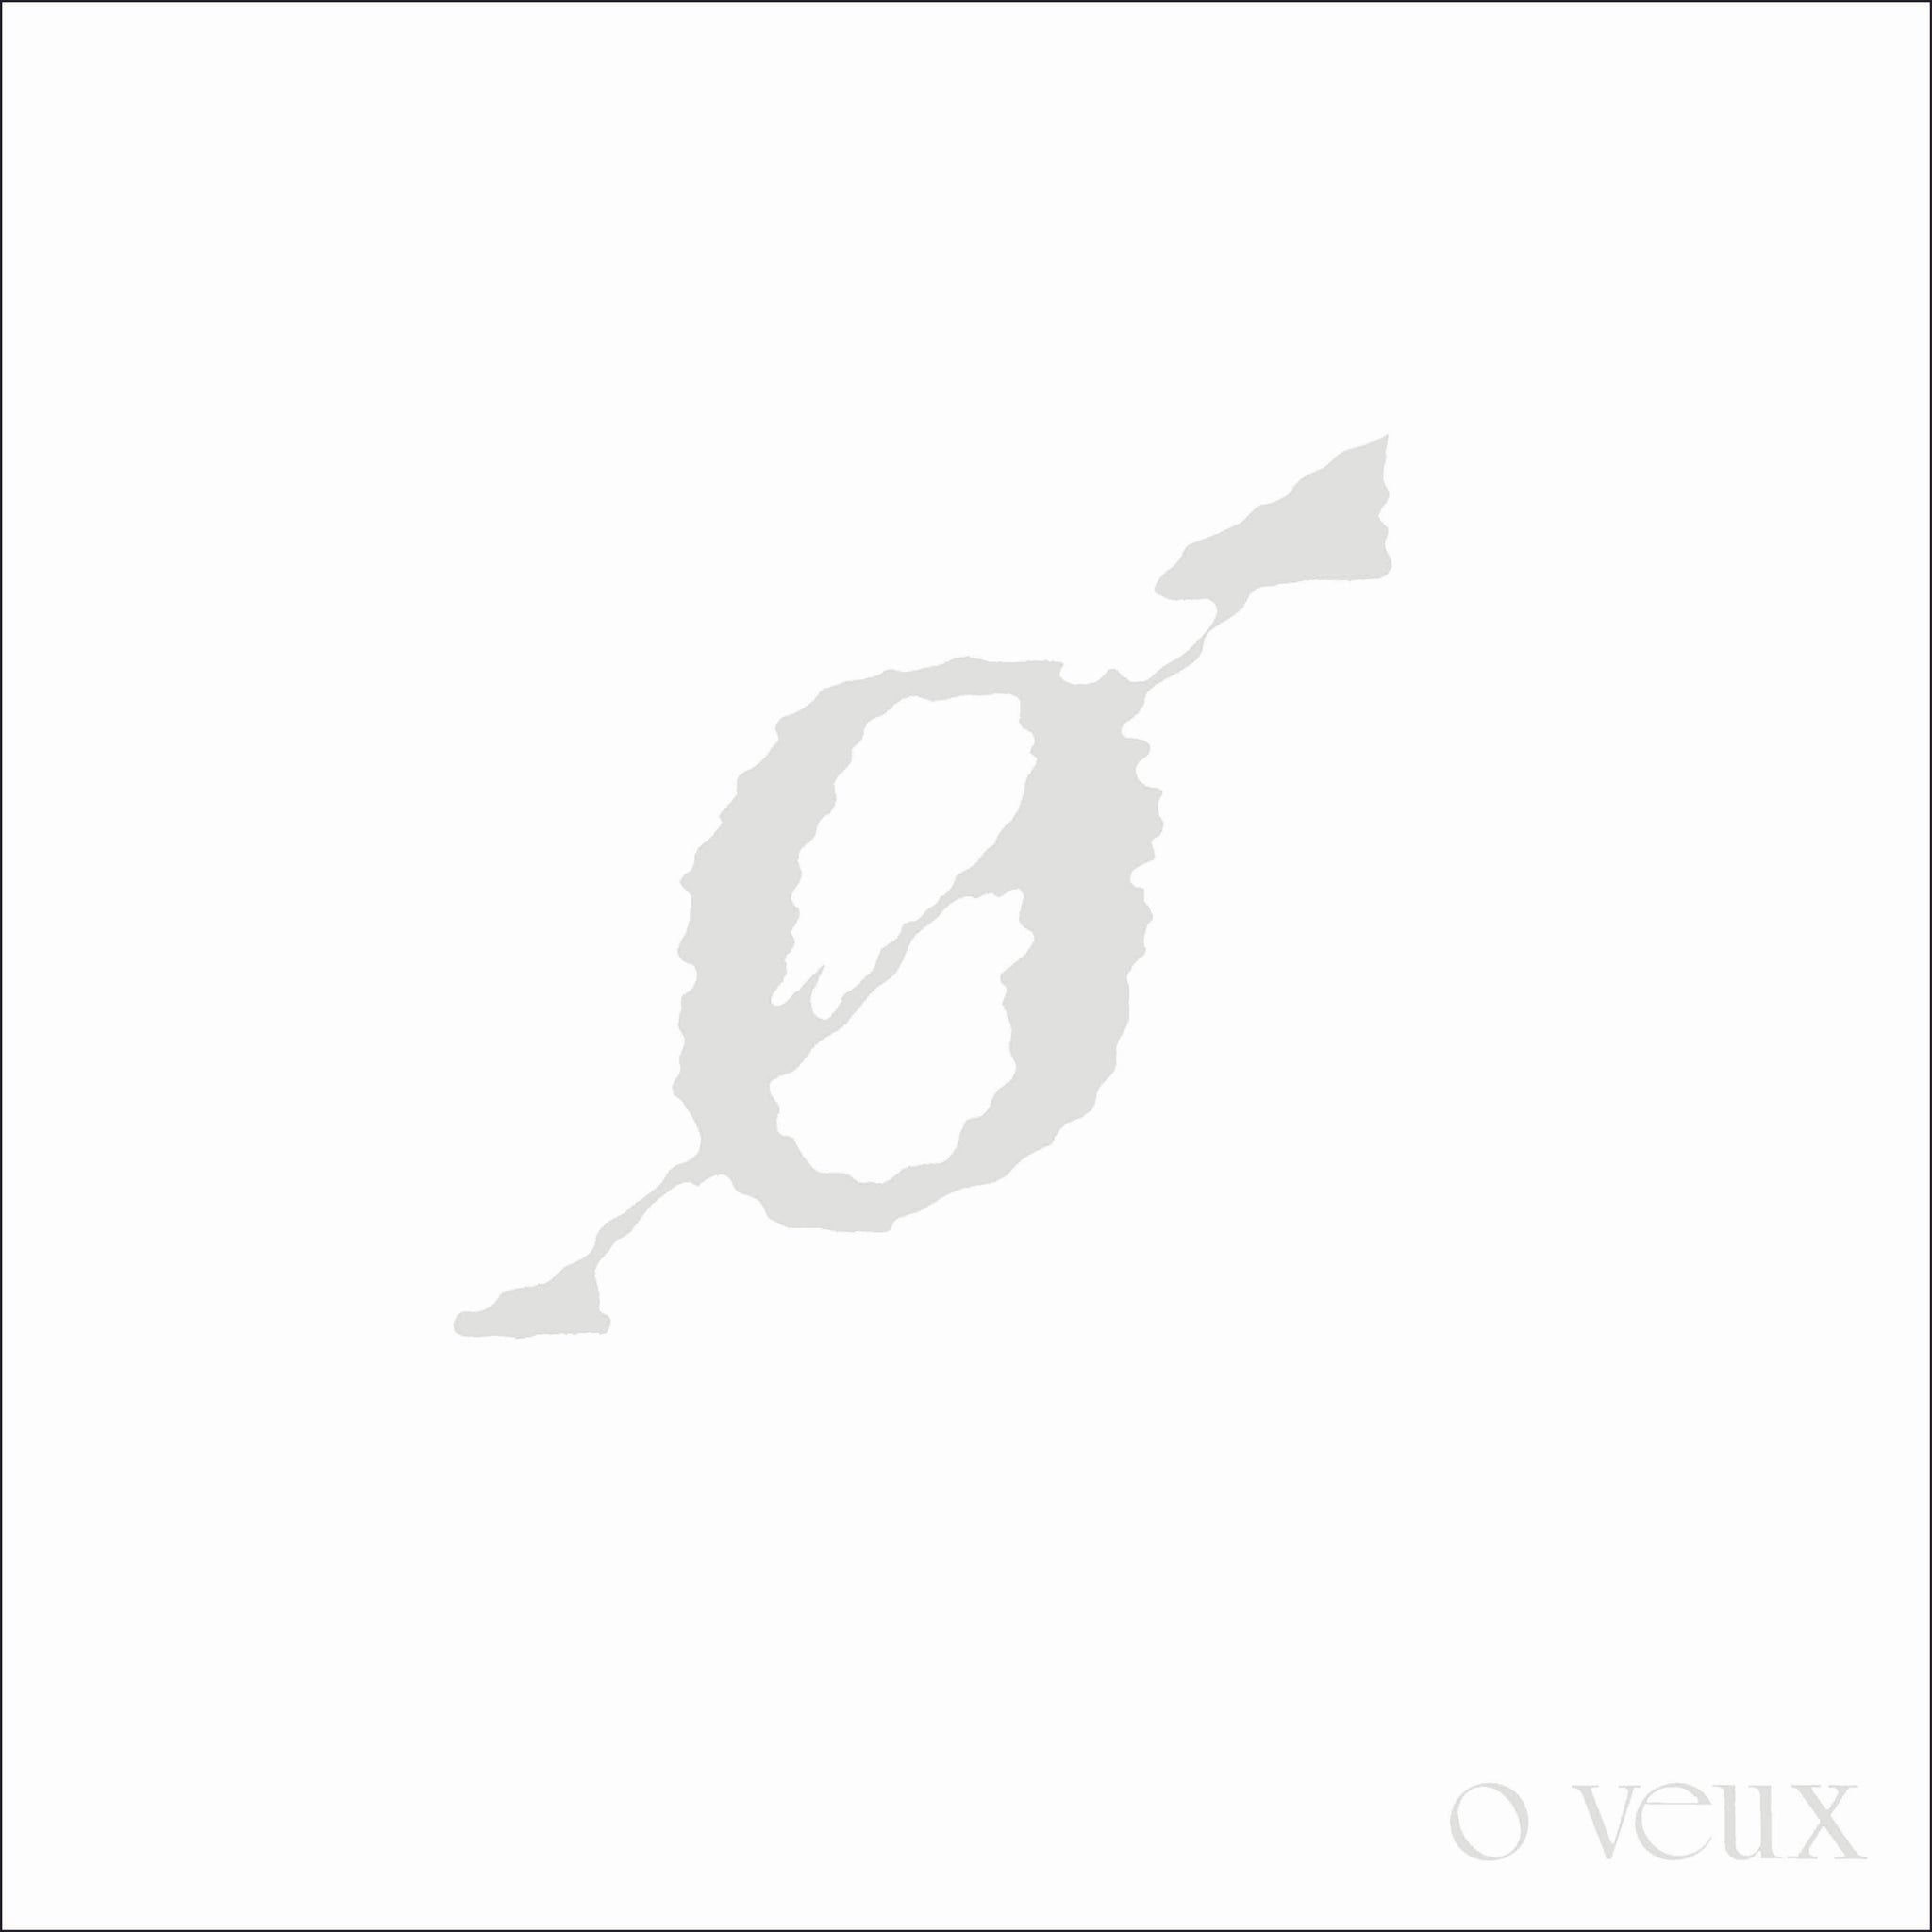 O Veux - O Veux 2xLP (Onderstroom Version)